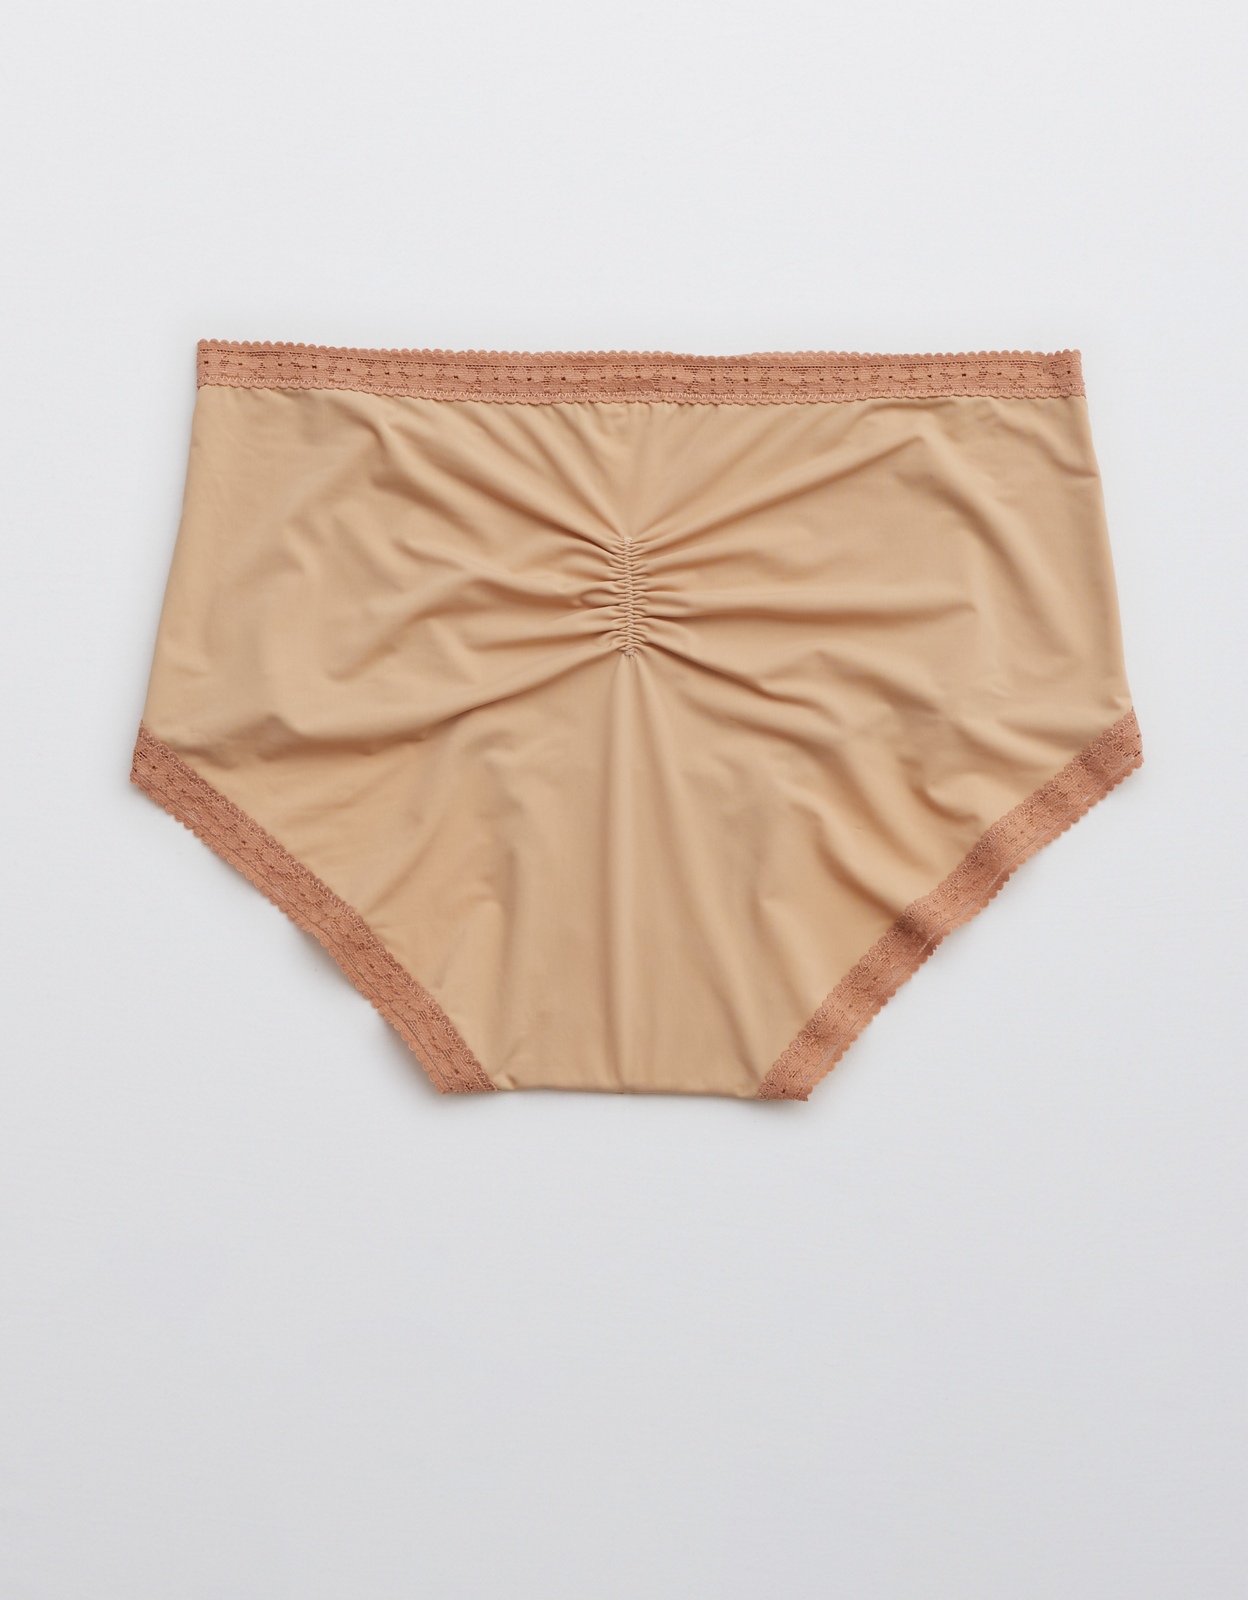 Aerie Sunnie Blossom Lace High Waisted Boybrief Underwear In Beige